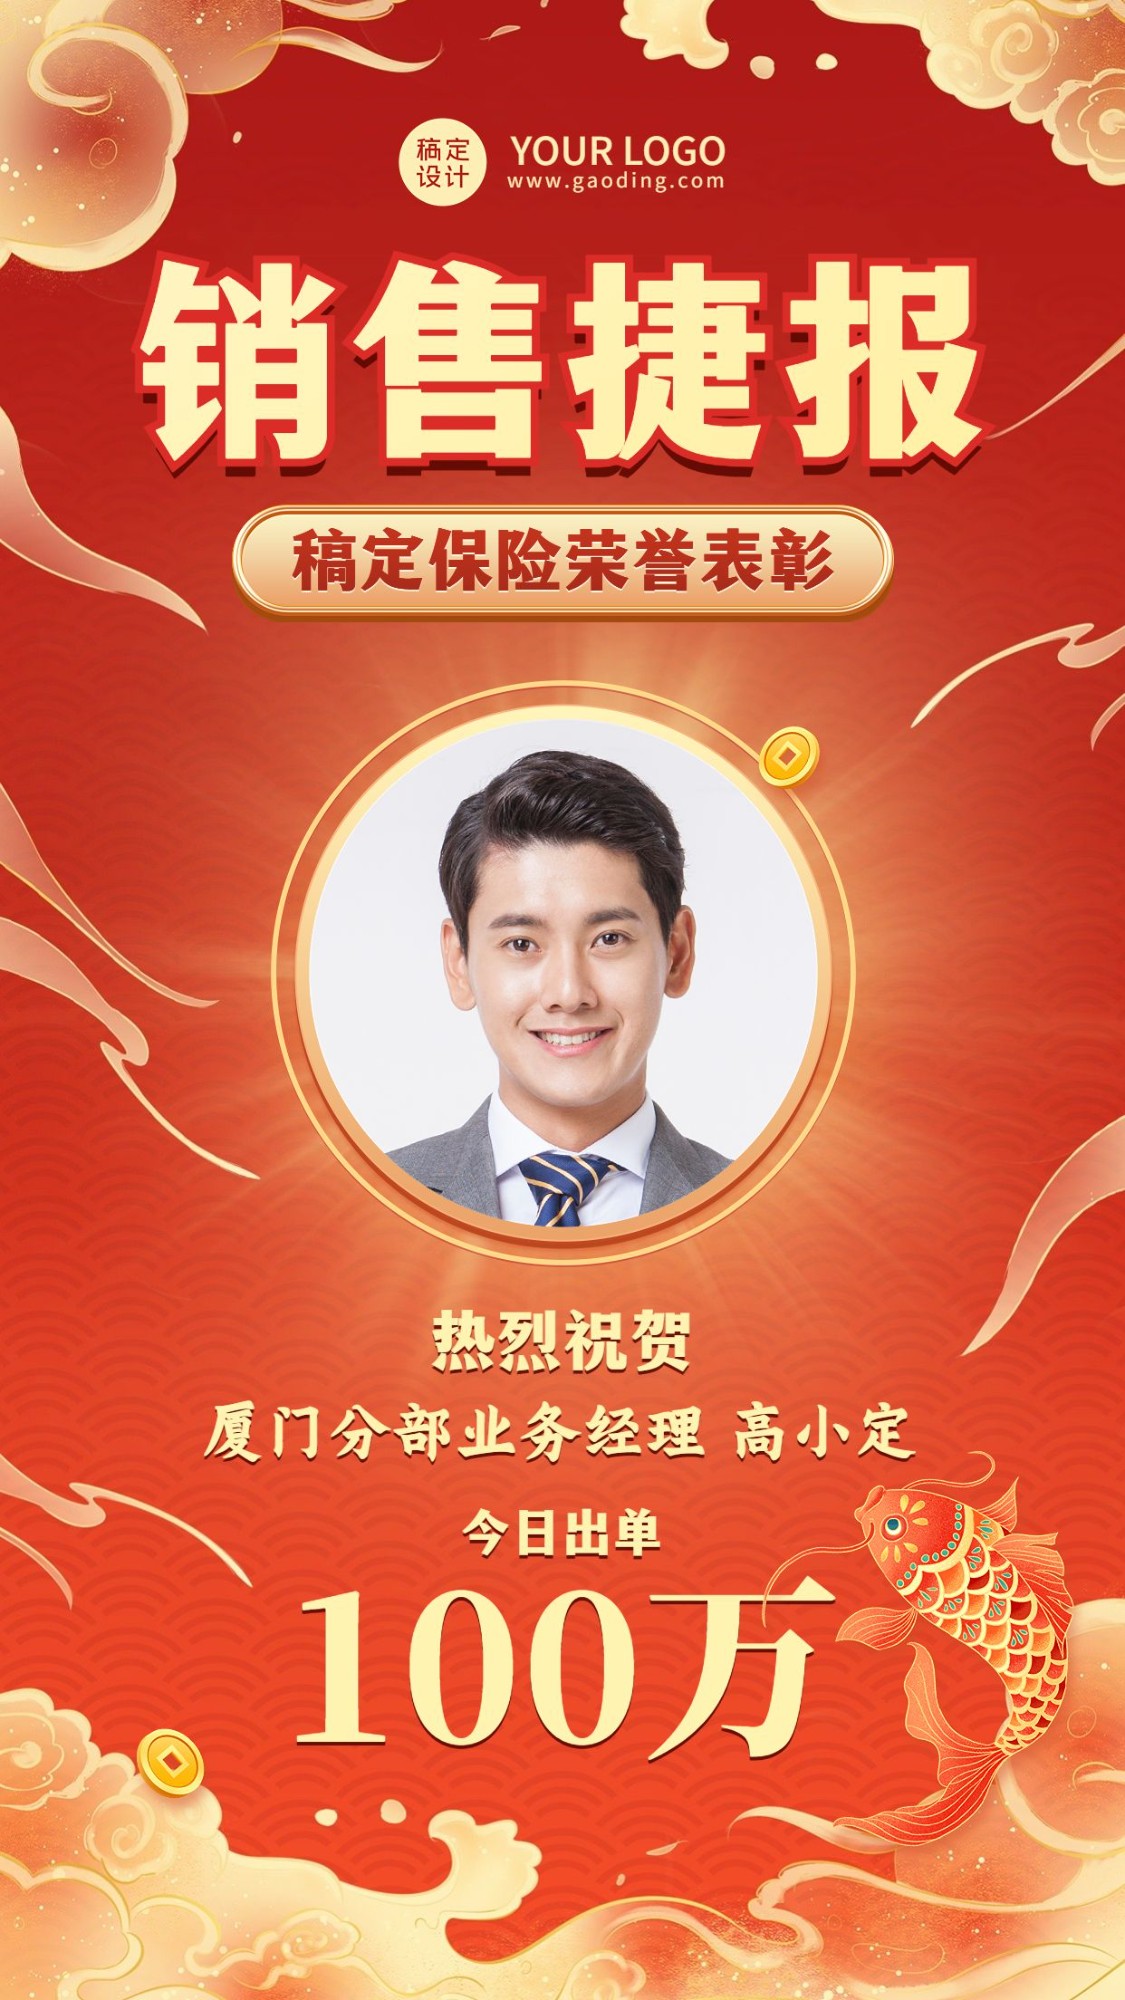 金融保险销售业绩荣誉表彰喜报中国风插画人物手机海报